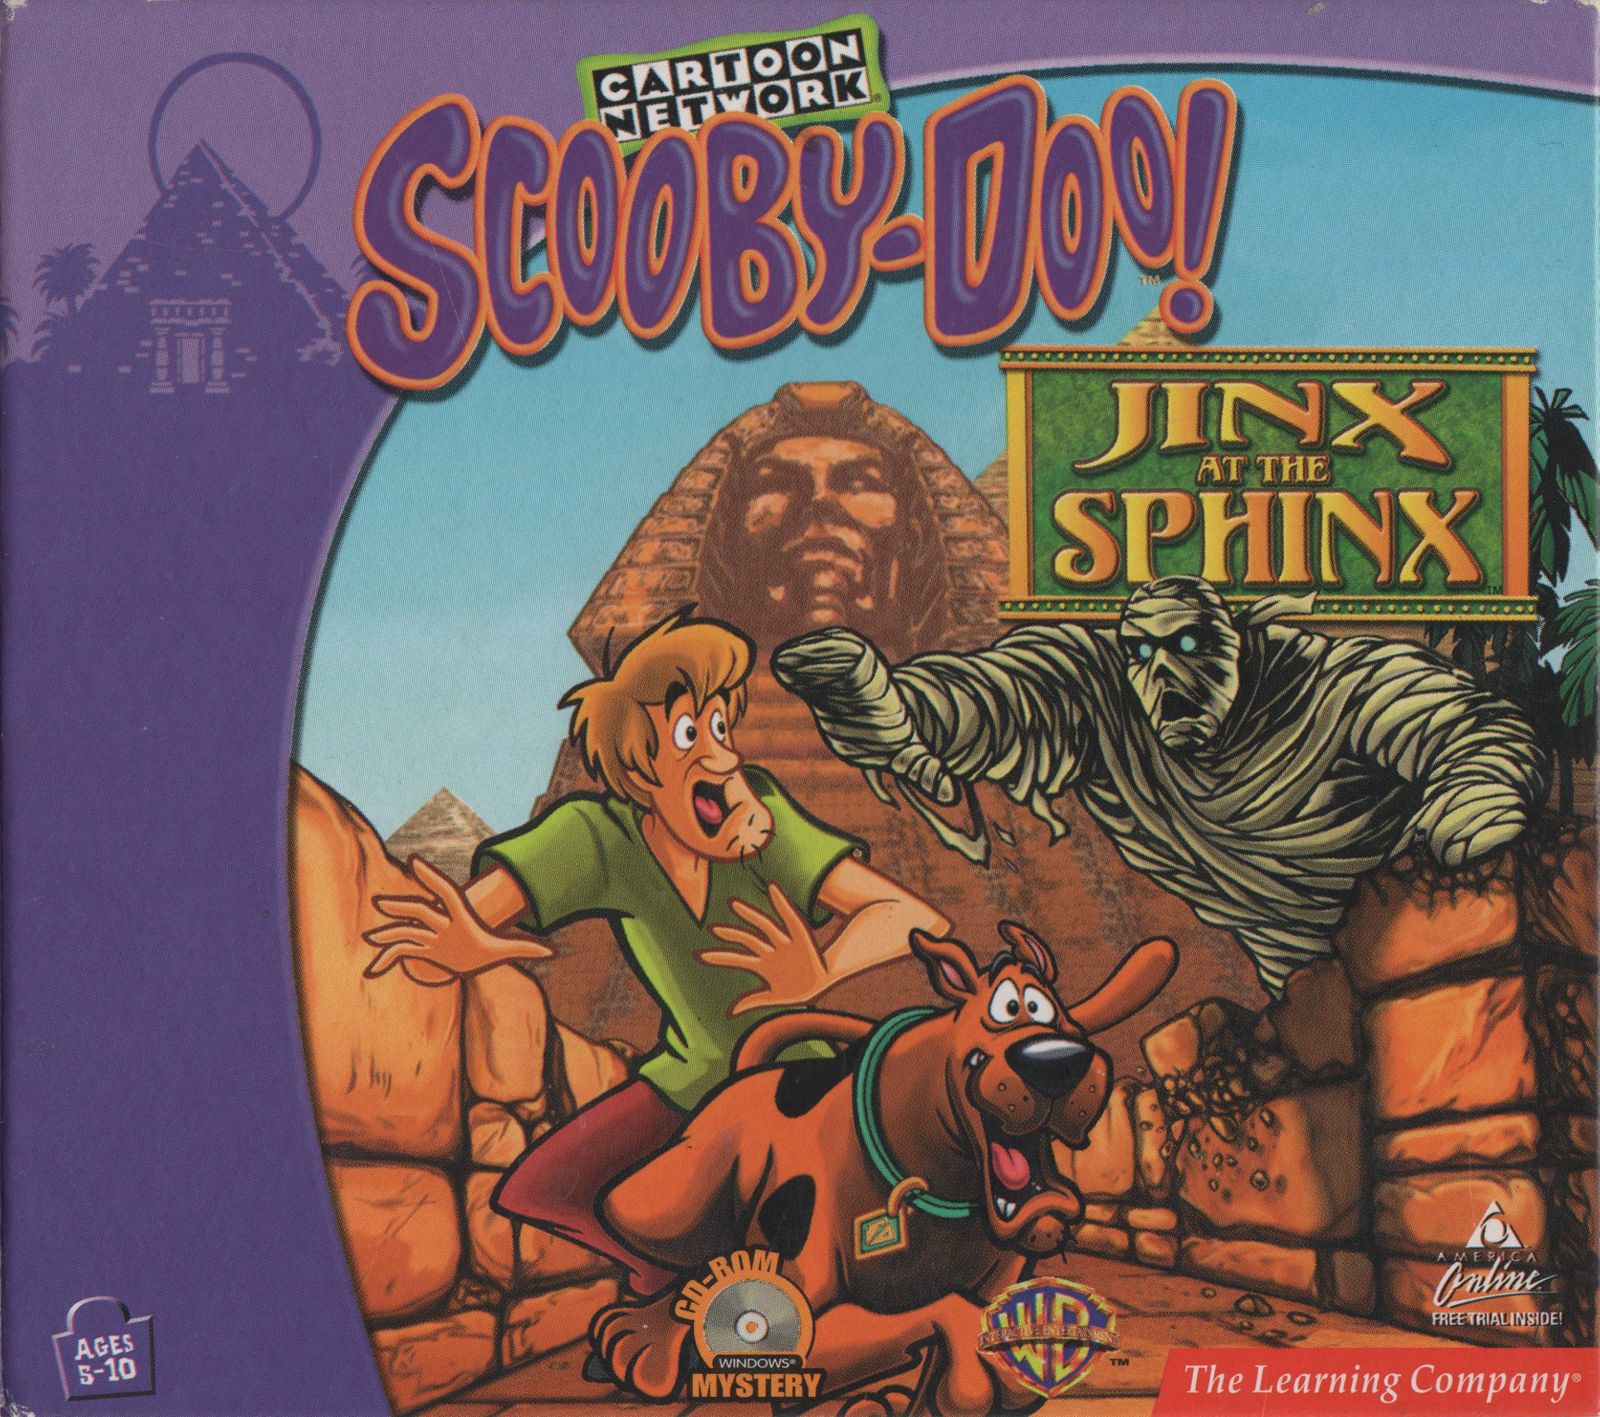 Scooby doo jinx at the sphinx